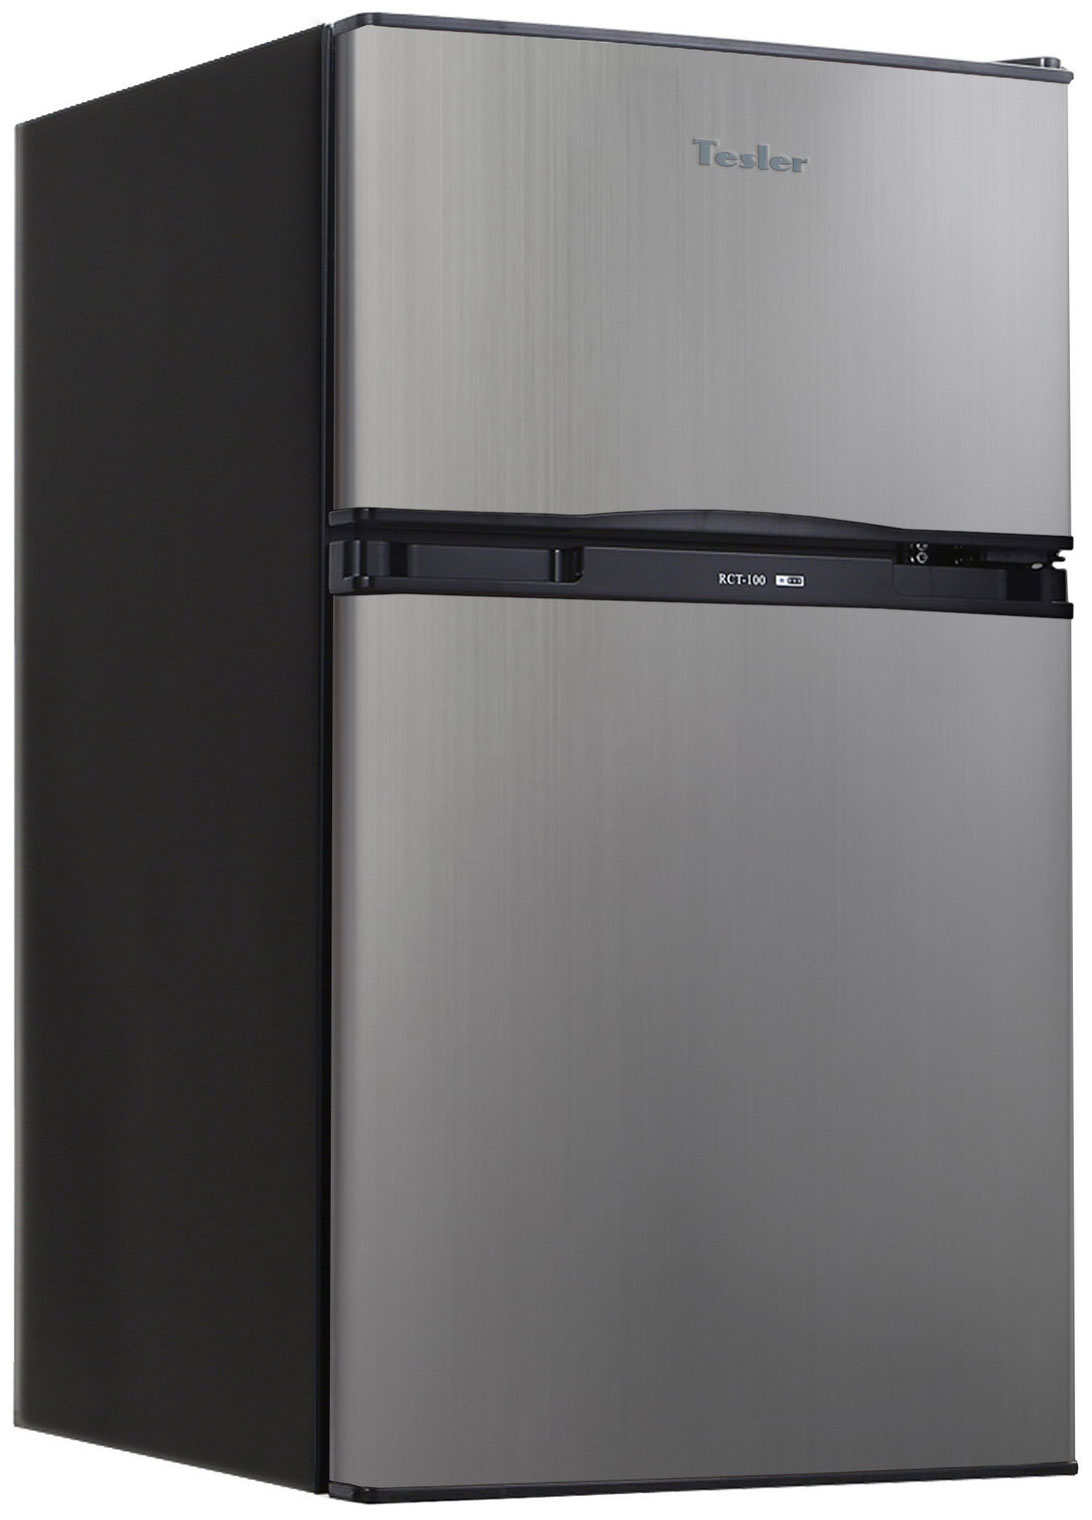 Двухкамерный холодильник TESLER RCT-100 GRAPHITE двухкамерный холодильник tesler rct 100 dark brown